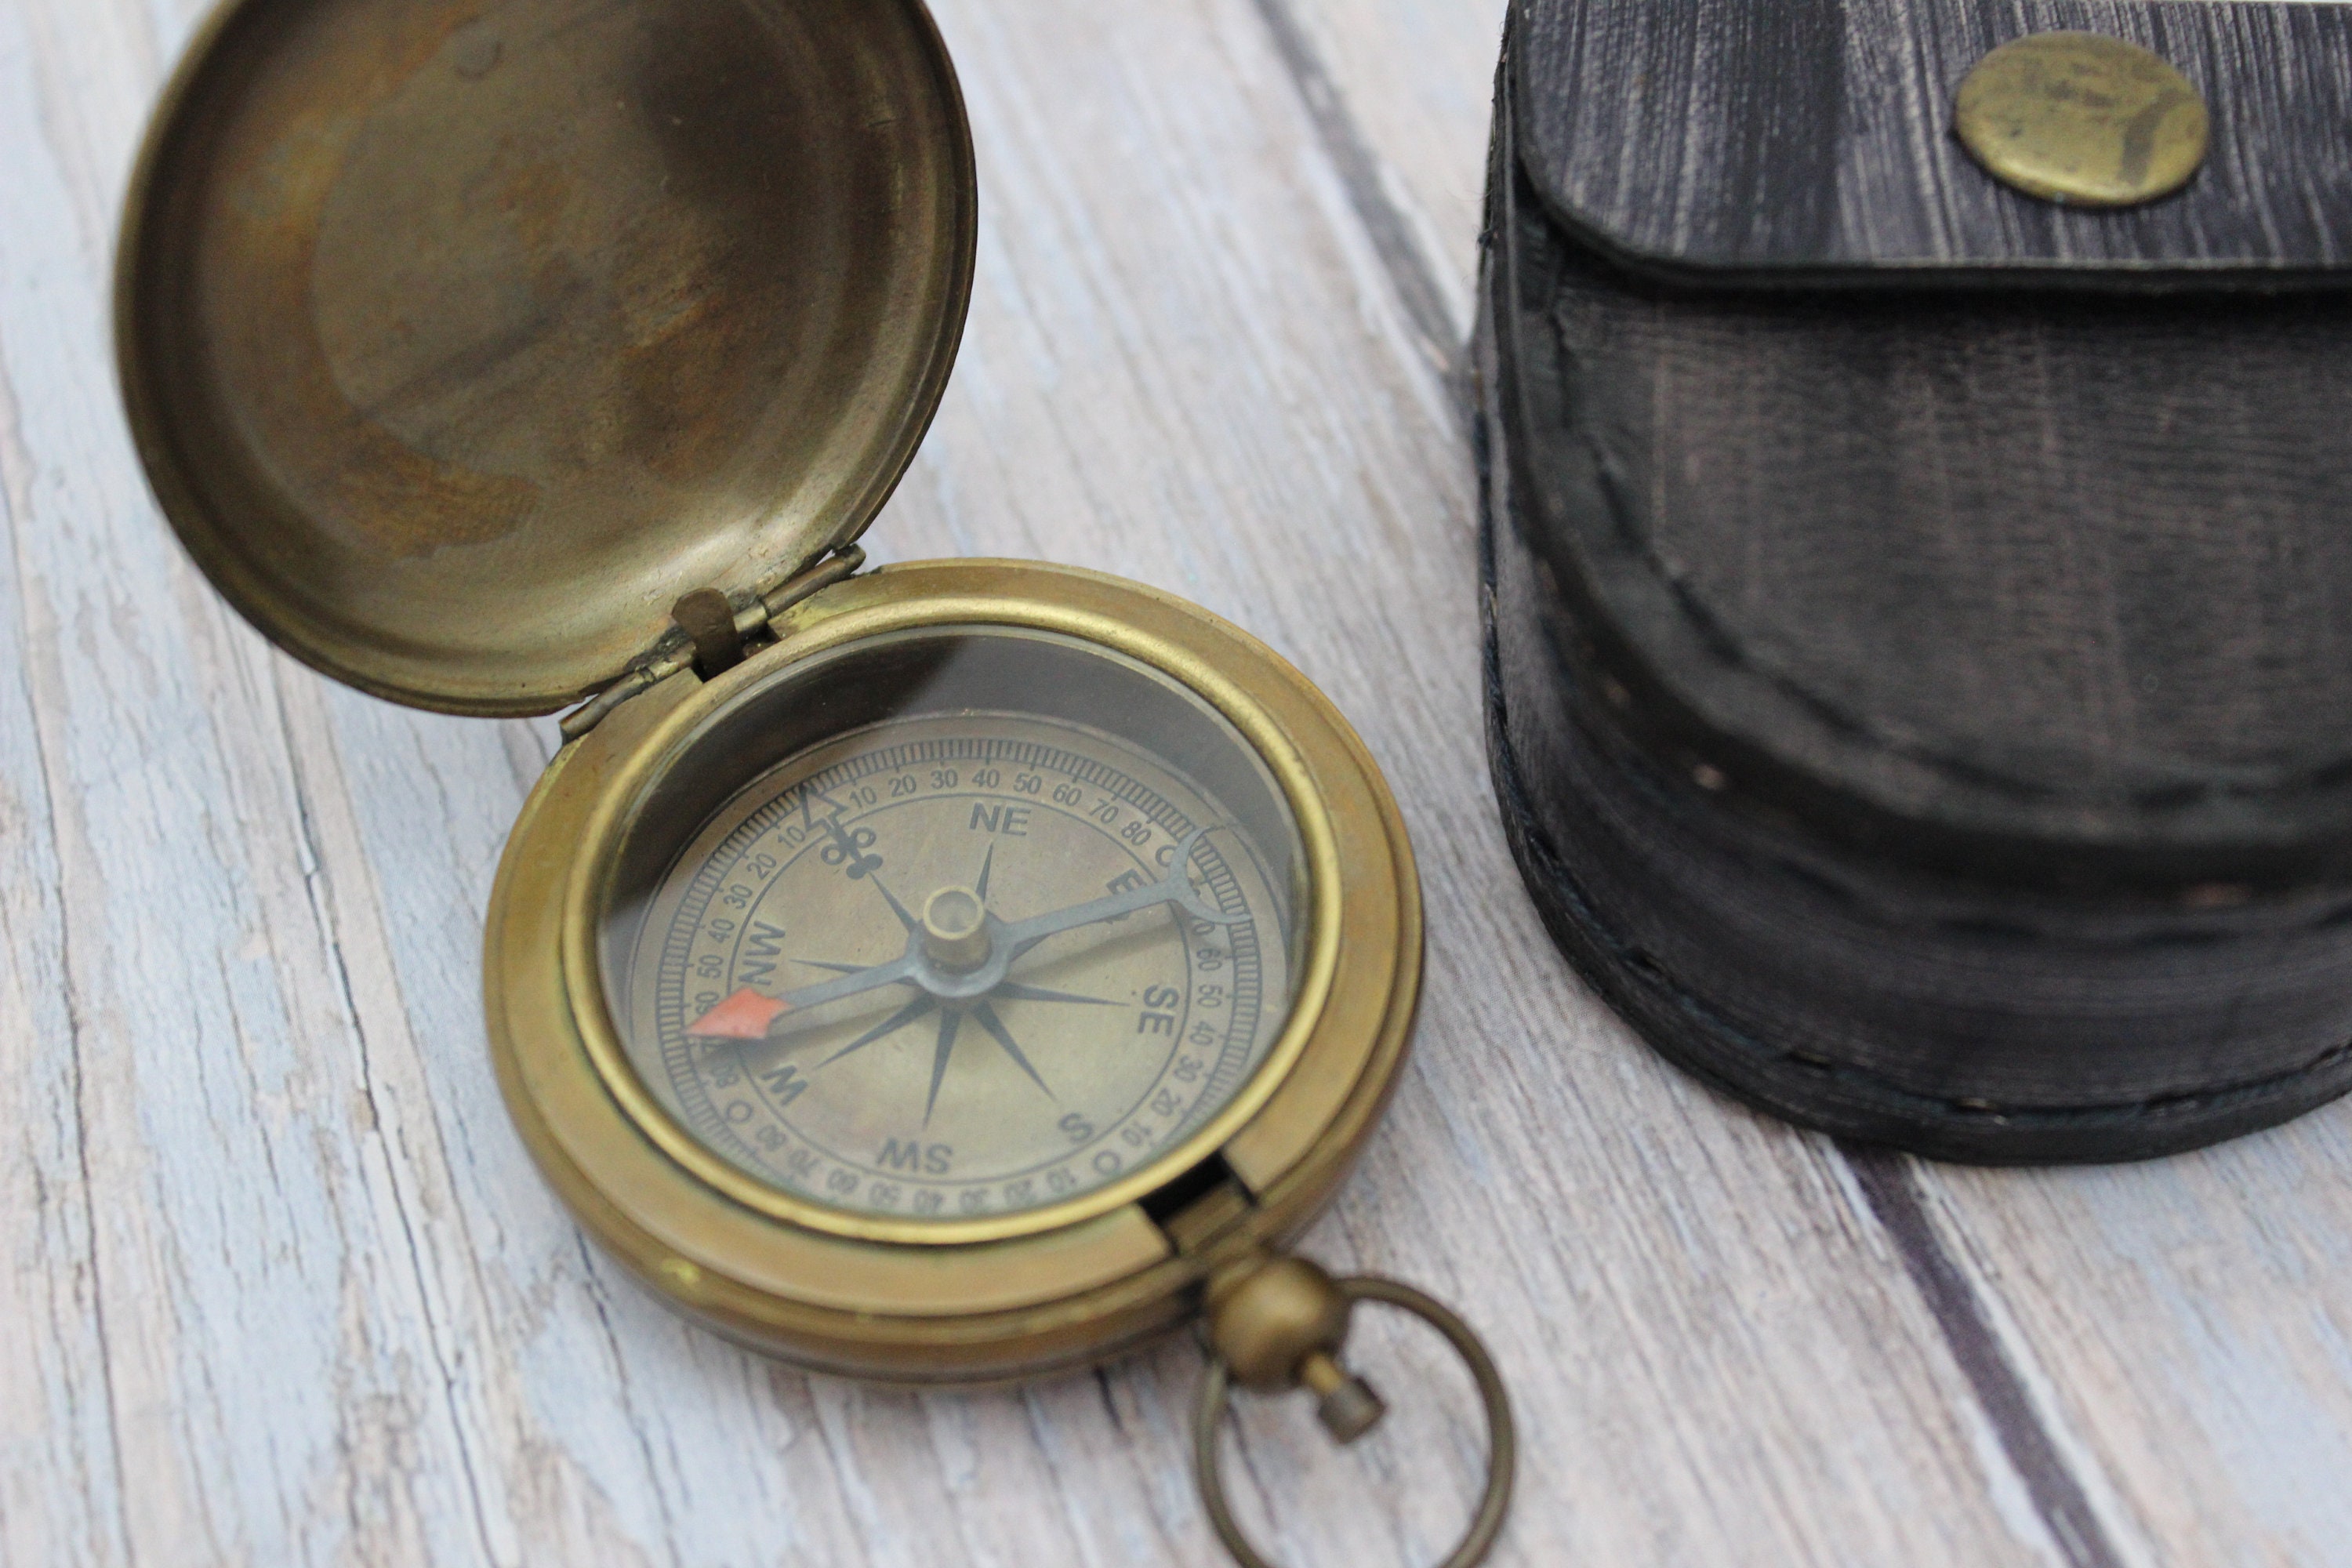 Antique Nautical Brass Pocket Compass Engraved (Faith Guide You)